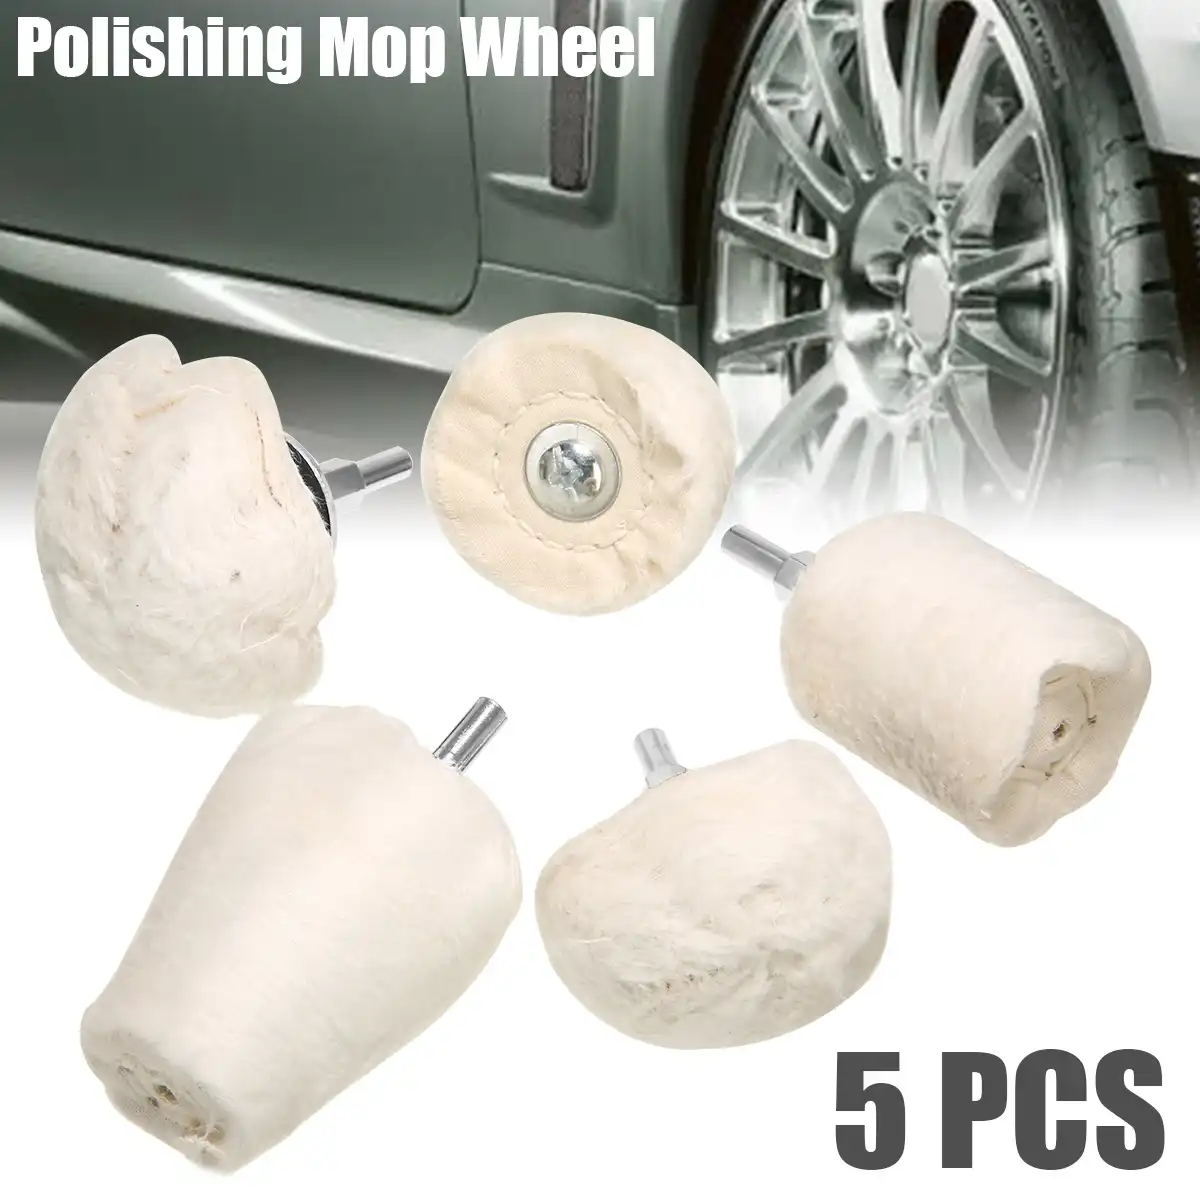 5pcs Buffing Pad Polishing Mop Wheel Kit Drill Attachment Set Tool Metal Plastic